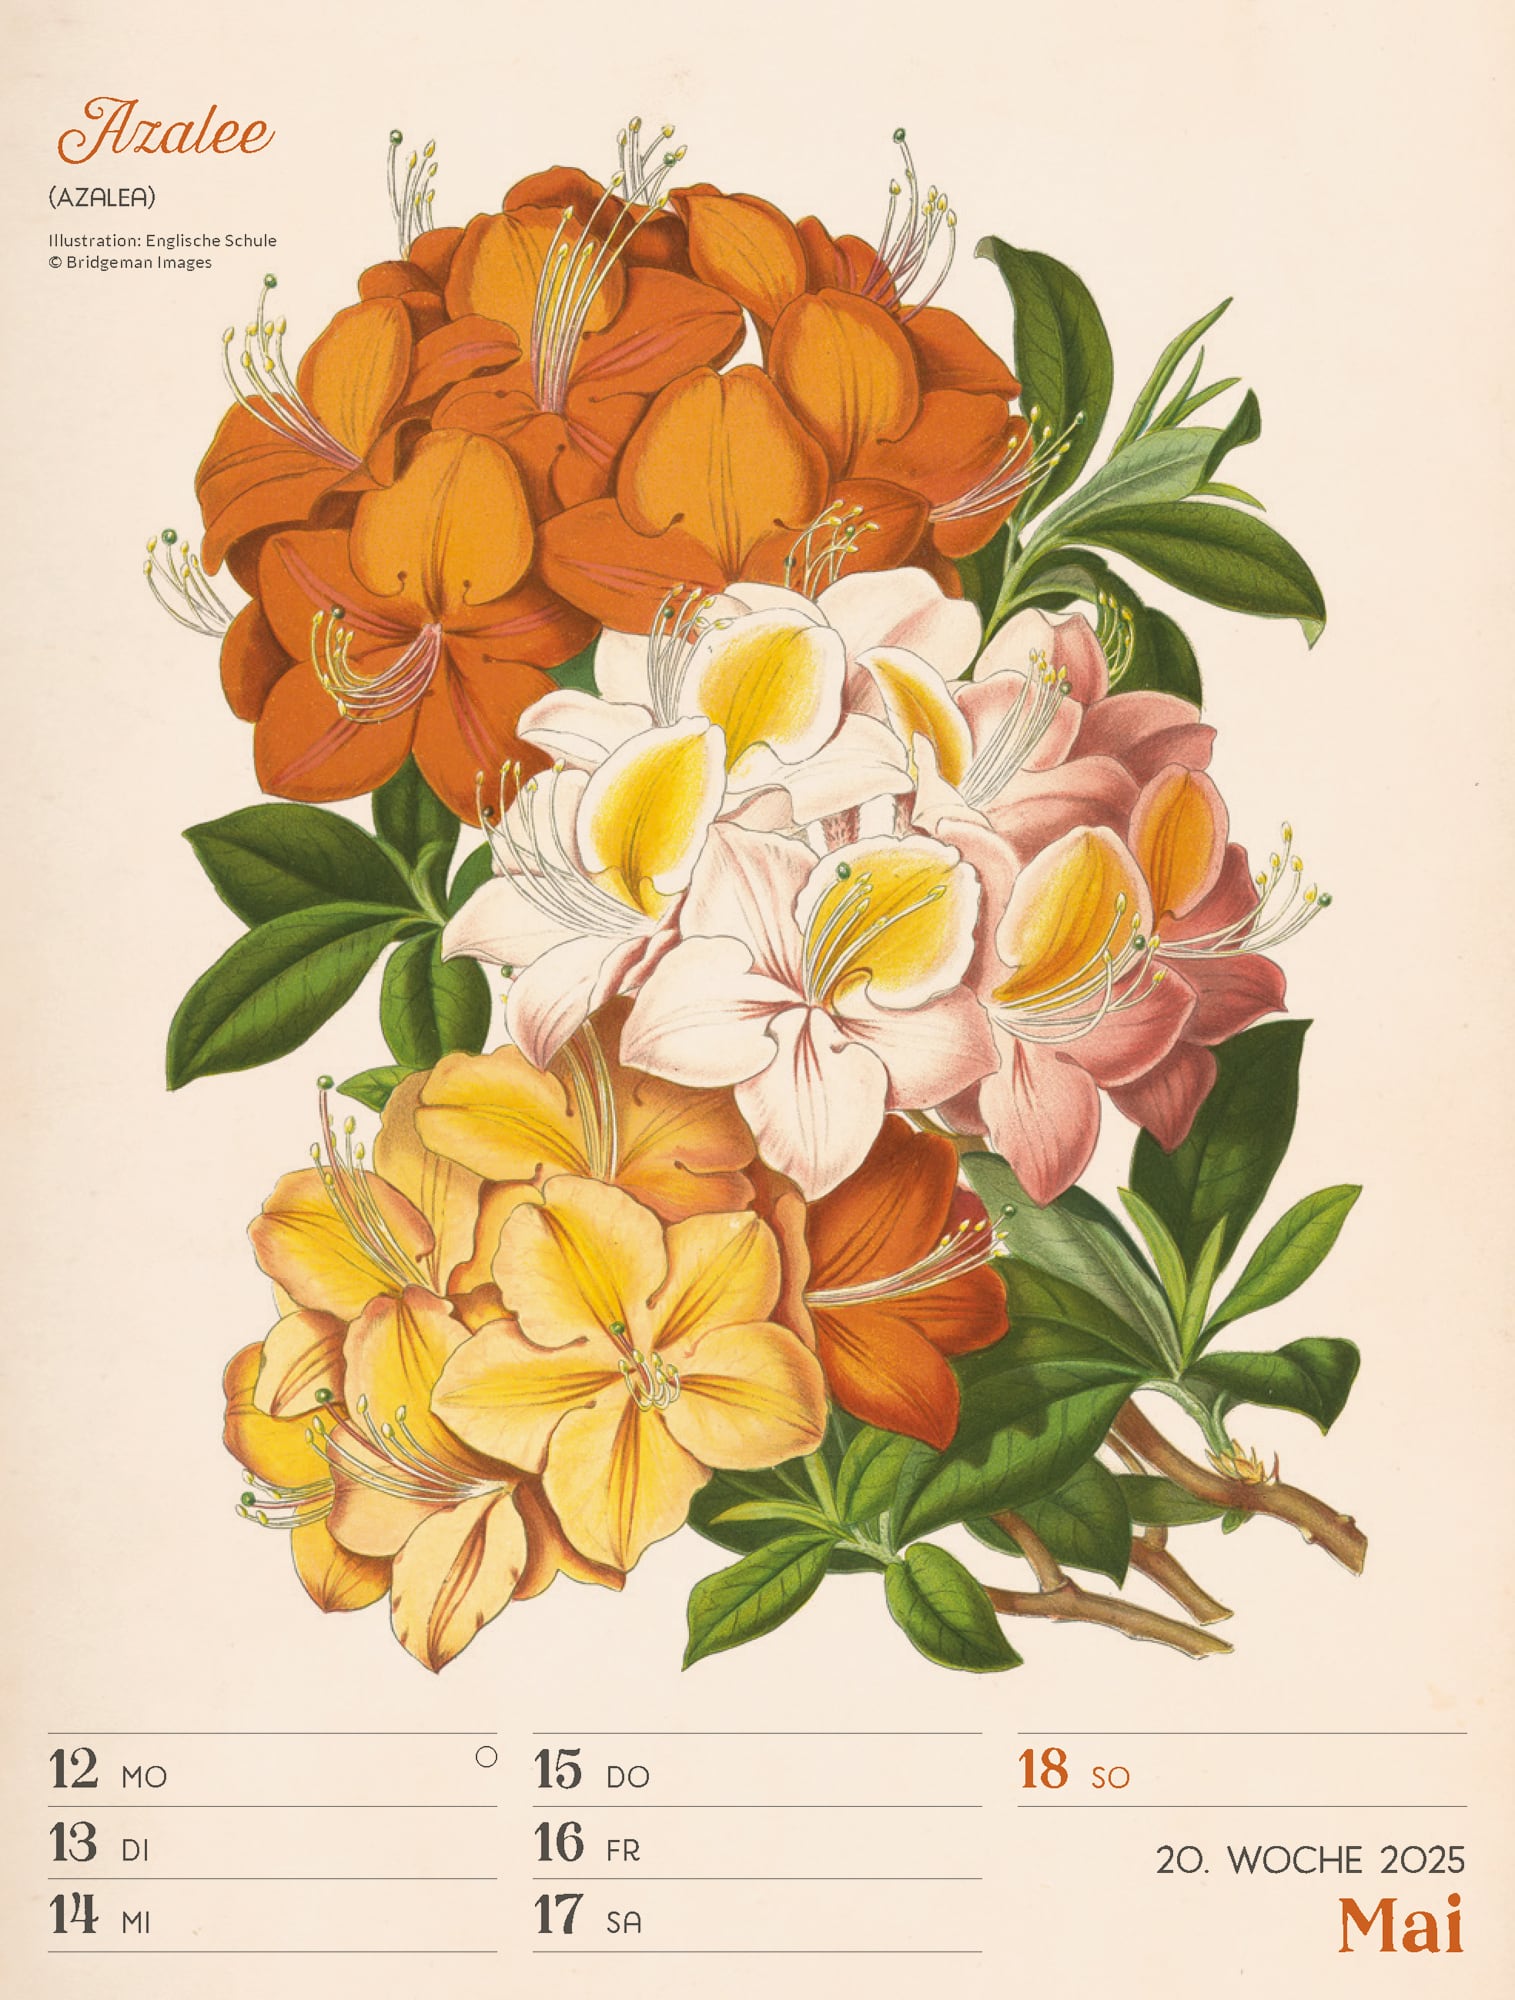 Ackermann Calendar Ars Floralis 2025 - Weekly Planner - Inside View 23